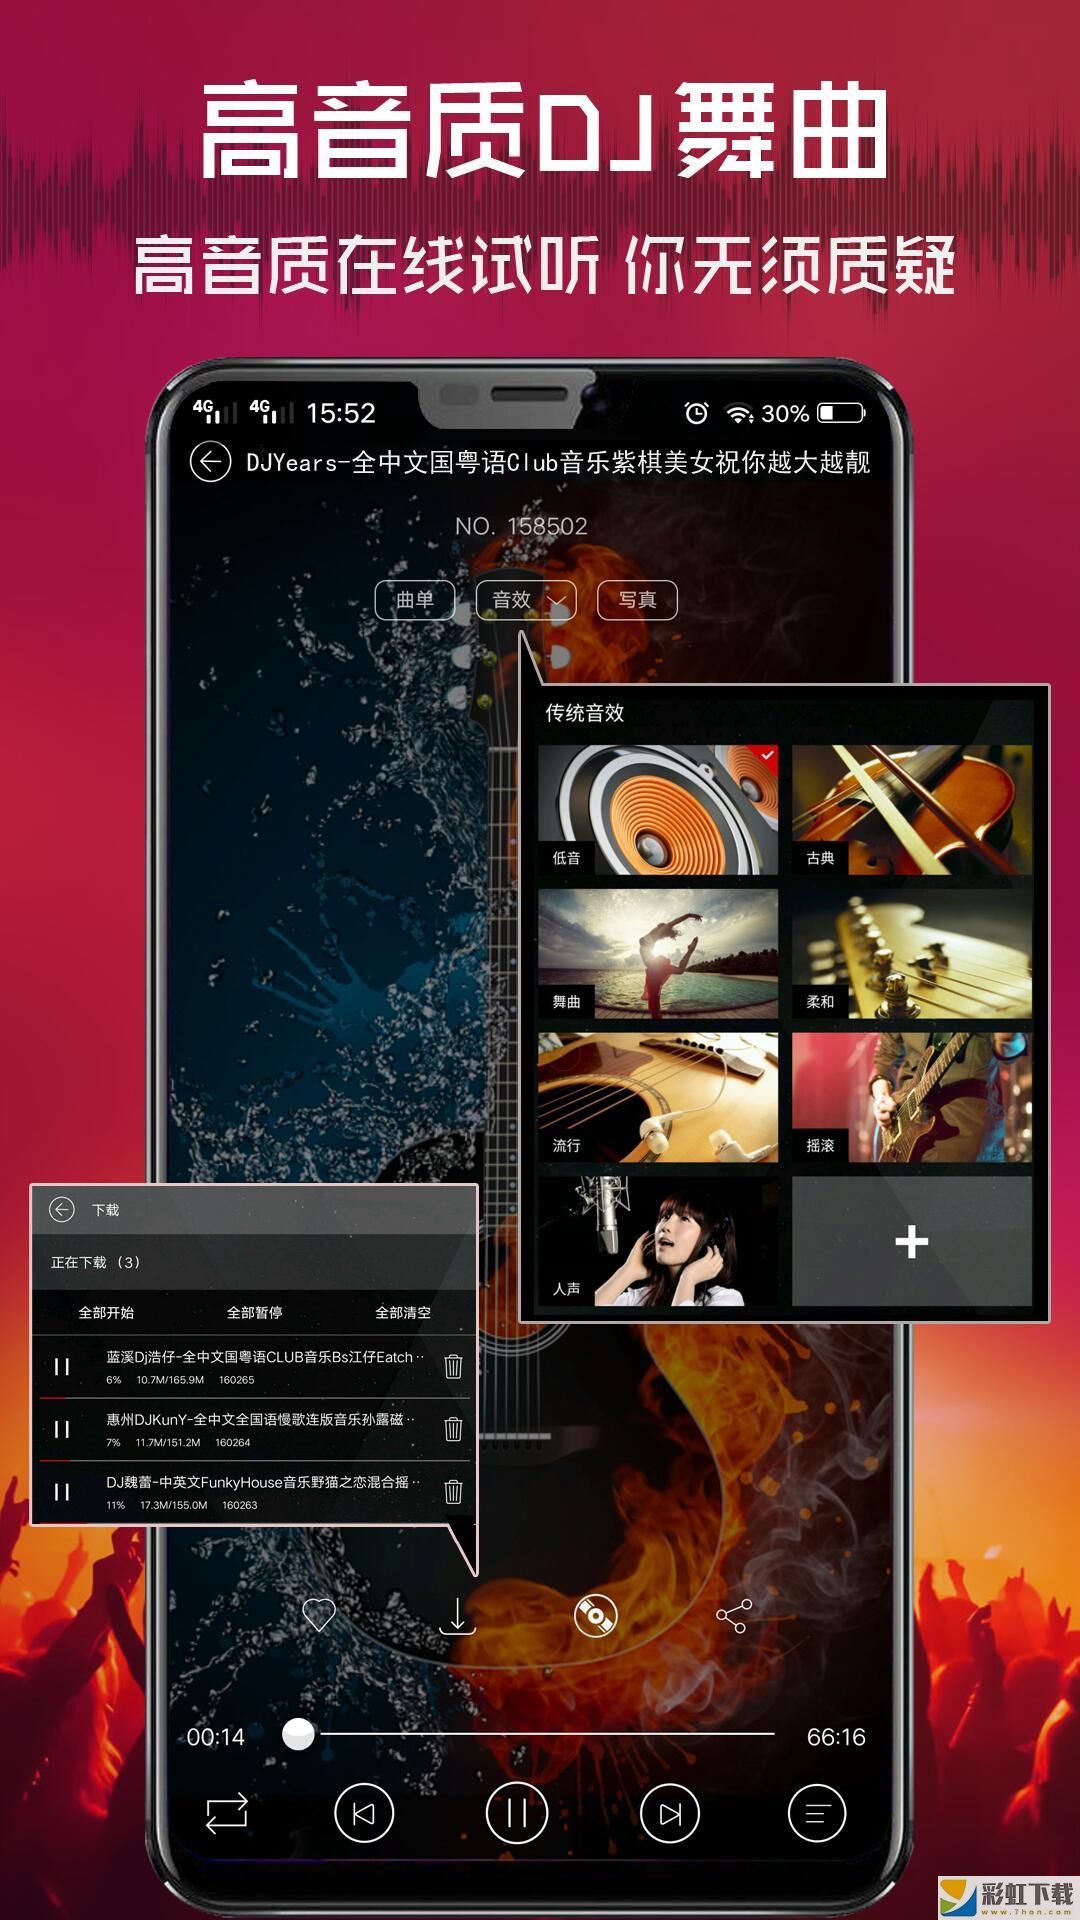 清风dj音乐网app下载**
版